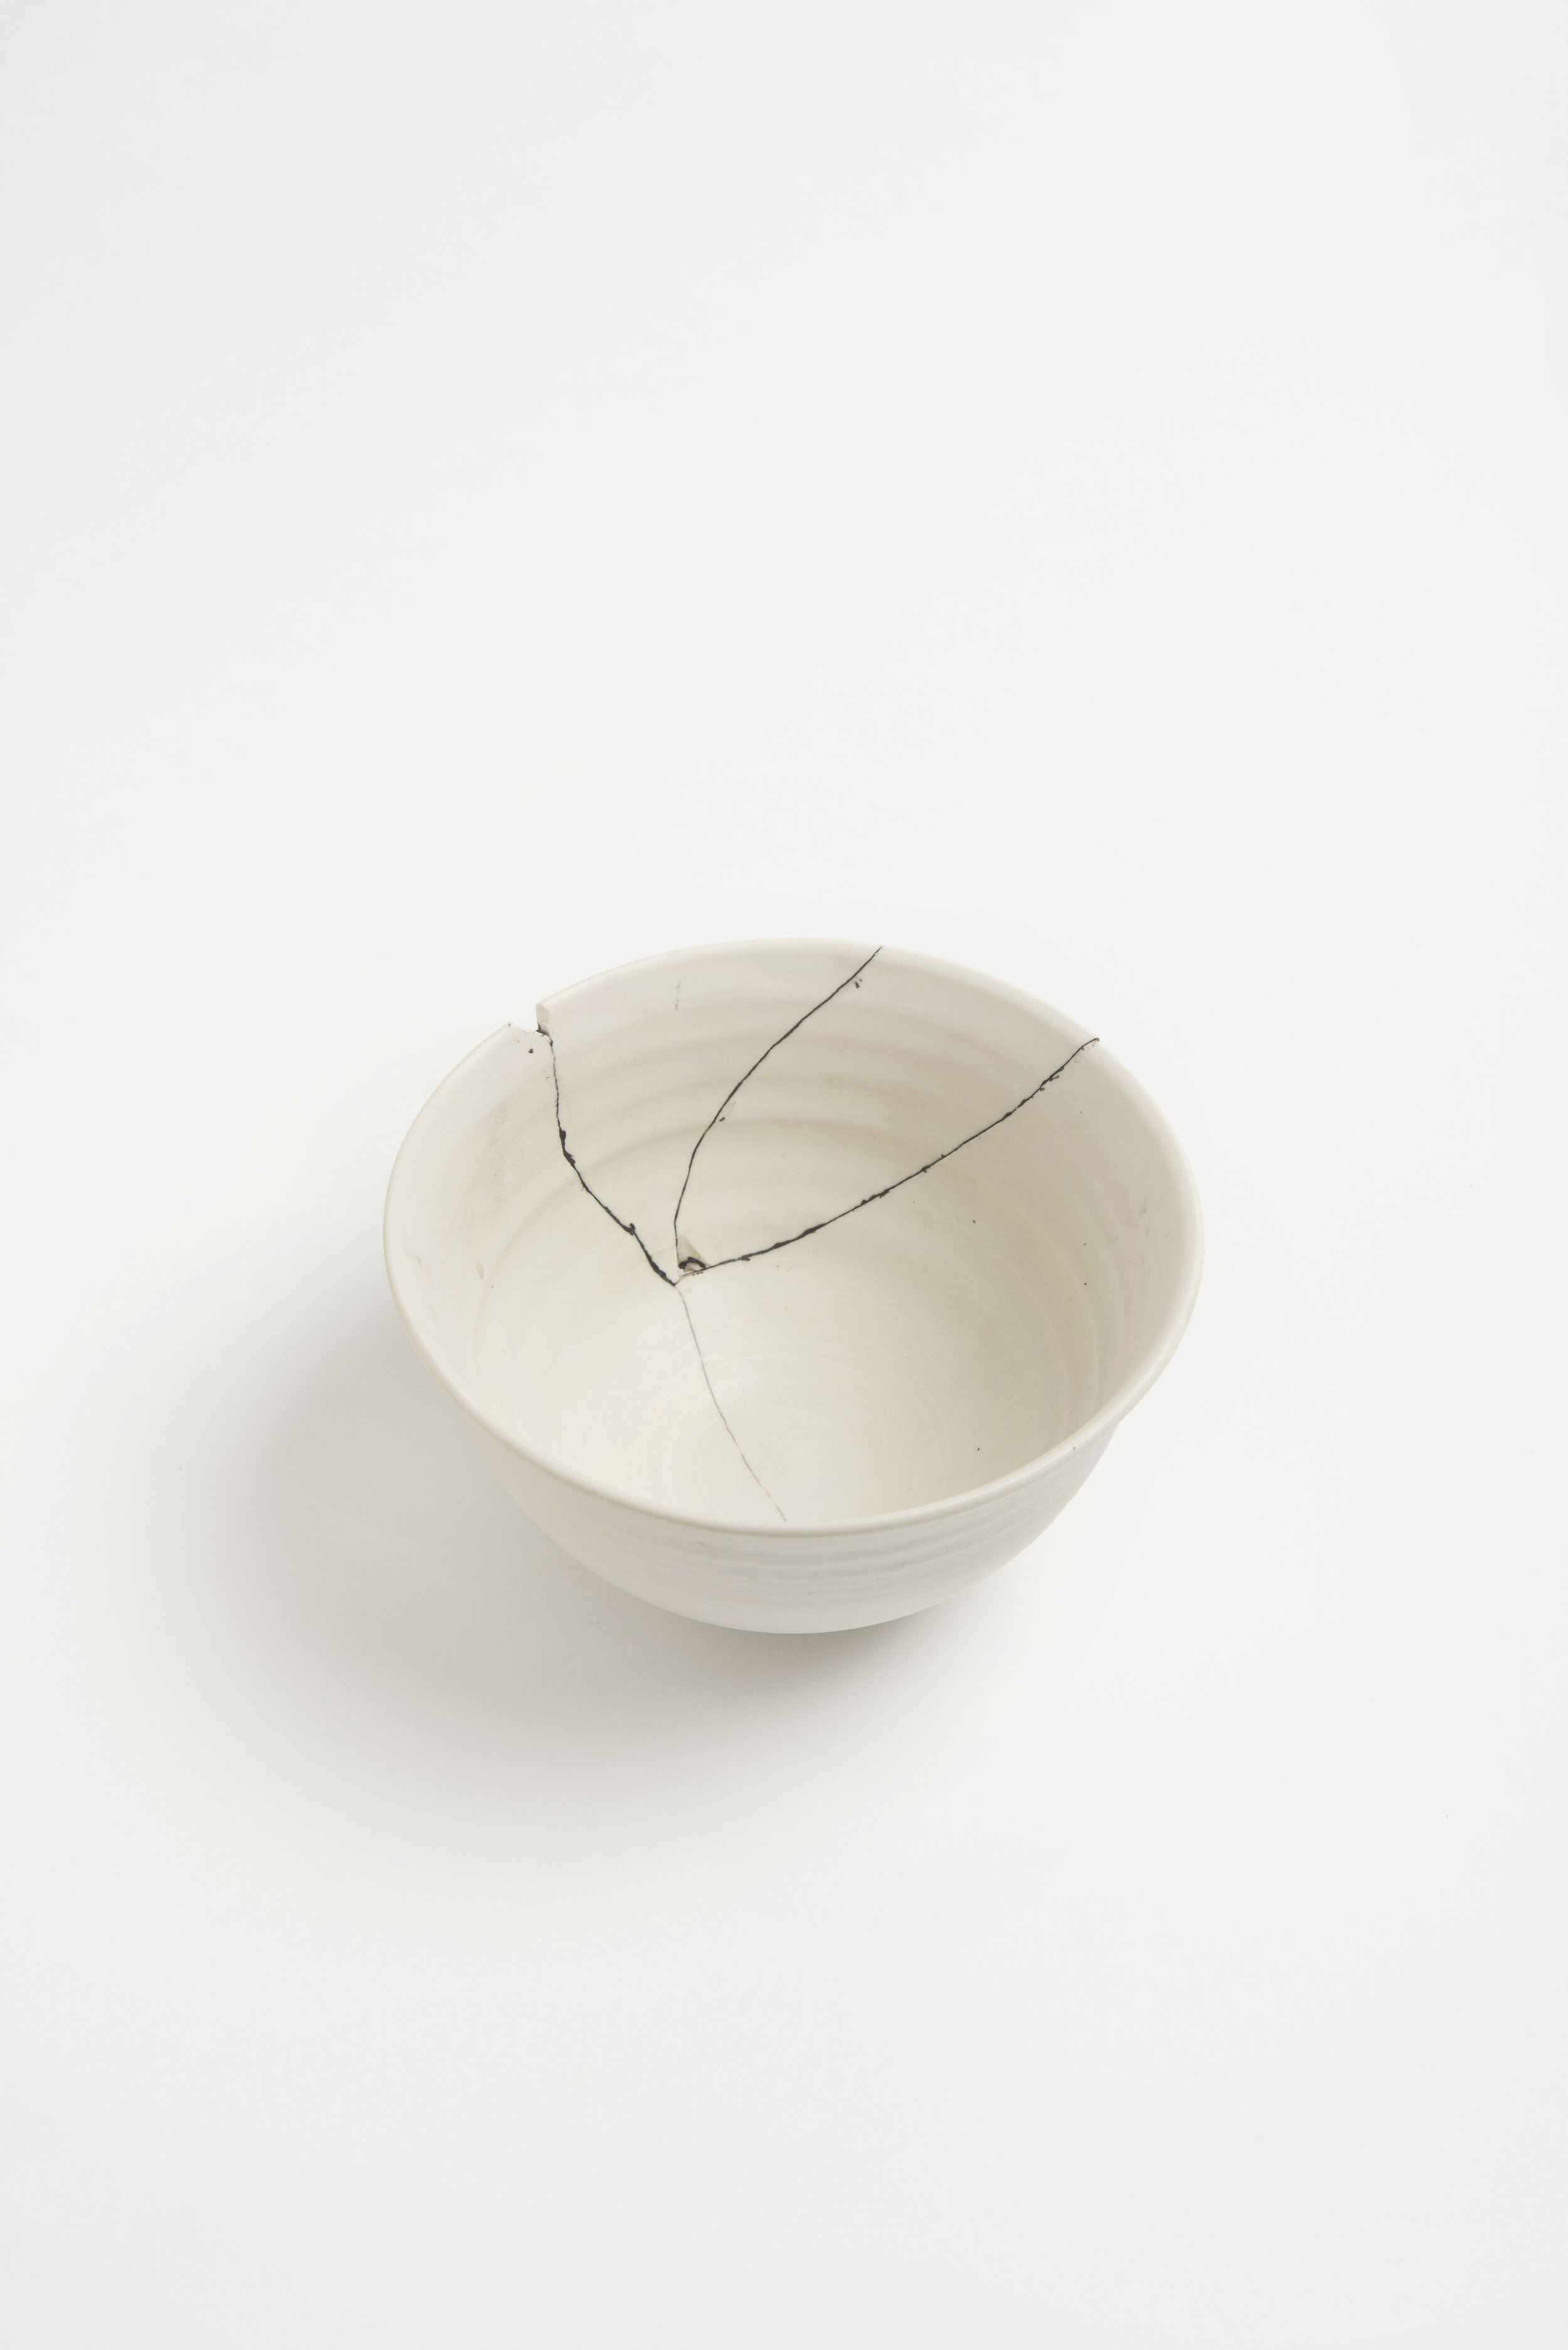 white-fracture-series-bowl-romy-northover-ceramics-the-garnered-12.jpg